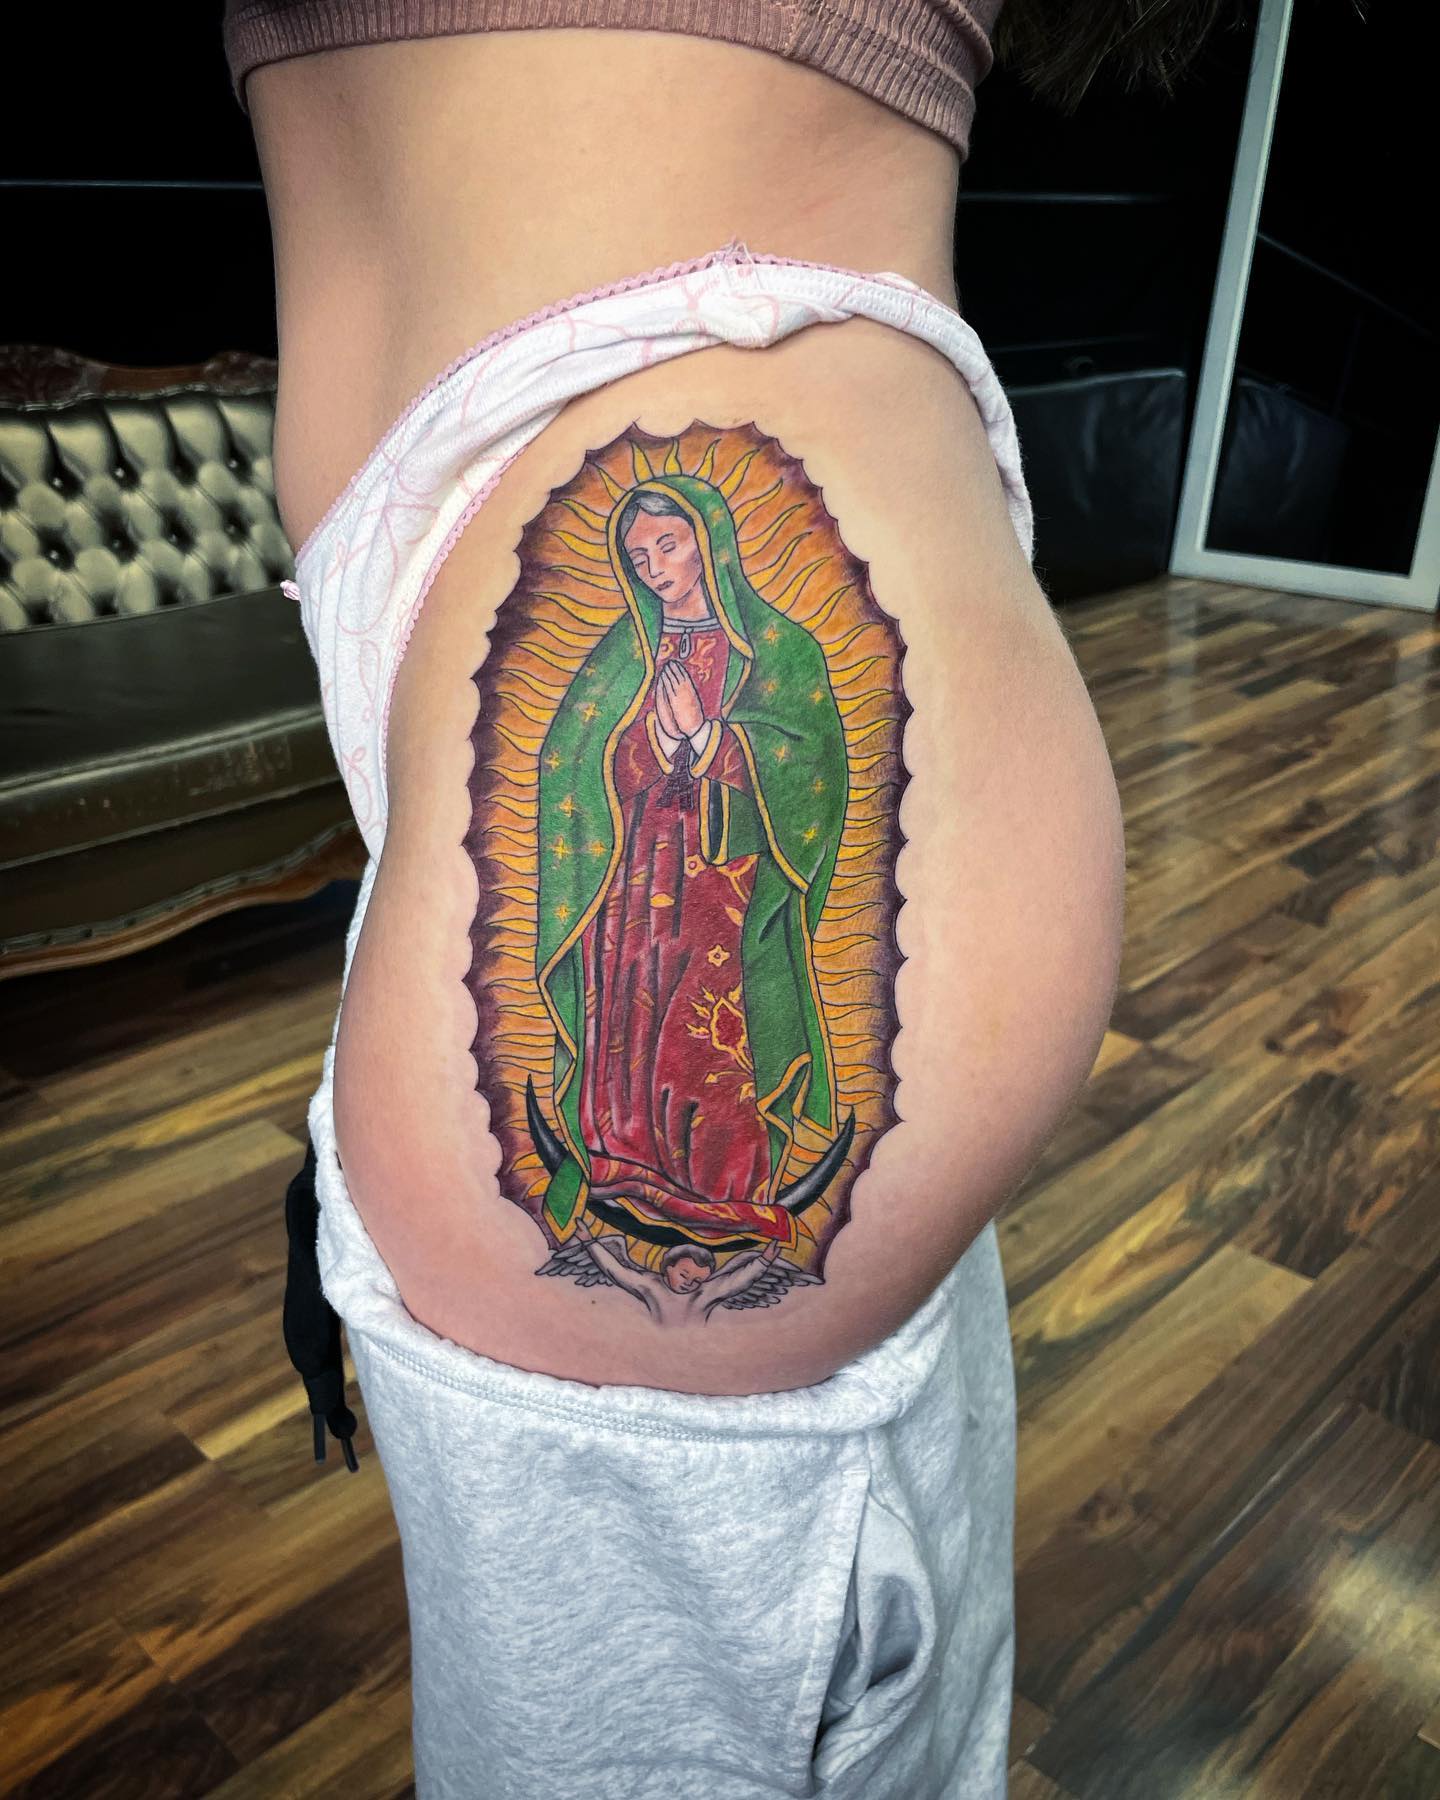 Tatuaje de la Virgen de Guadalupe en el muslo.